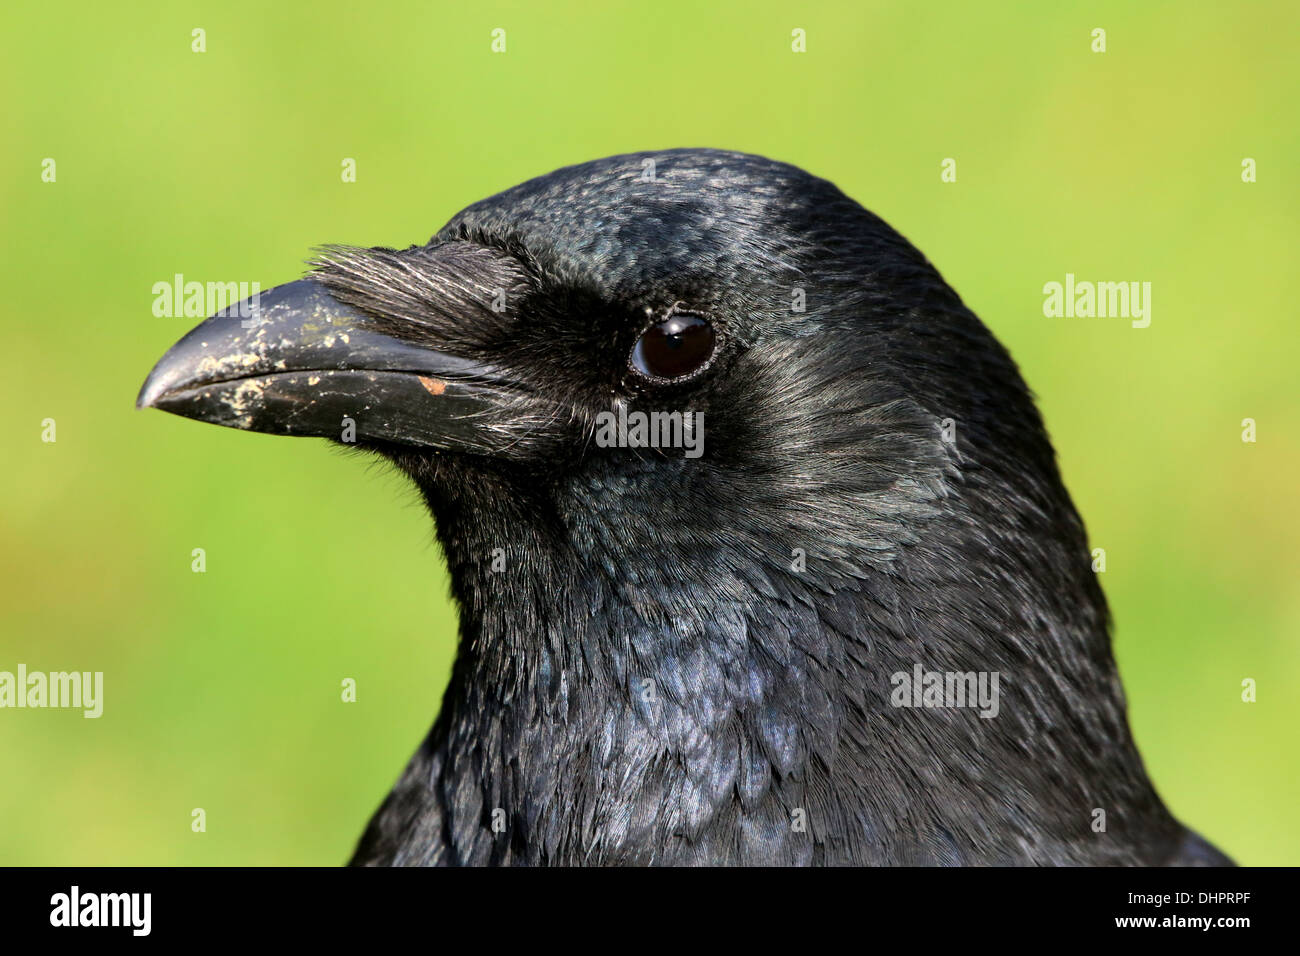 Dettagliato di close-up di testa e la parte superiore del corpo di un nero carrion crow (Corvus Corone) Foto Stock